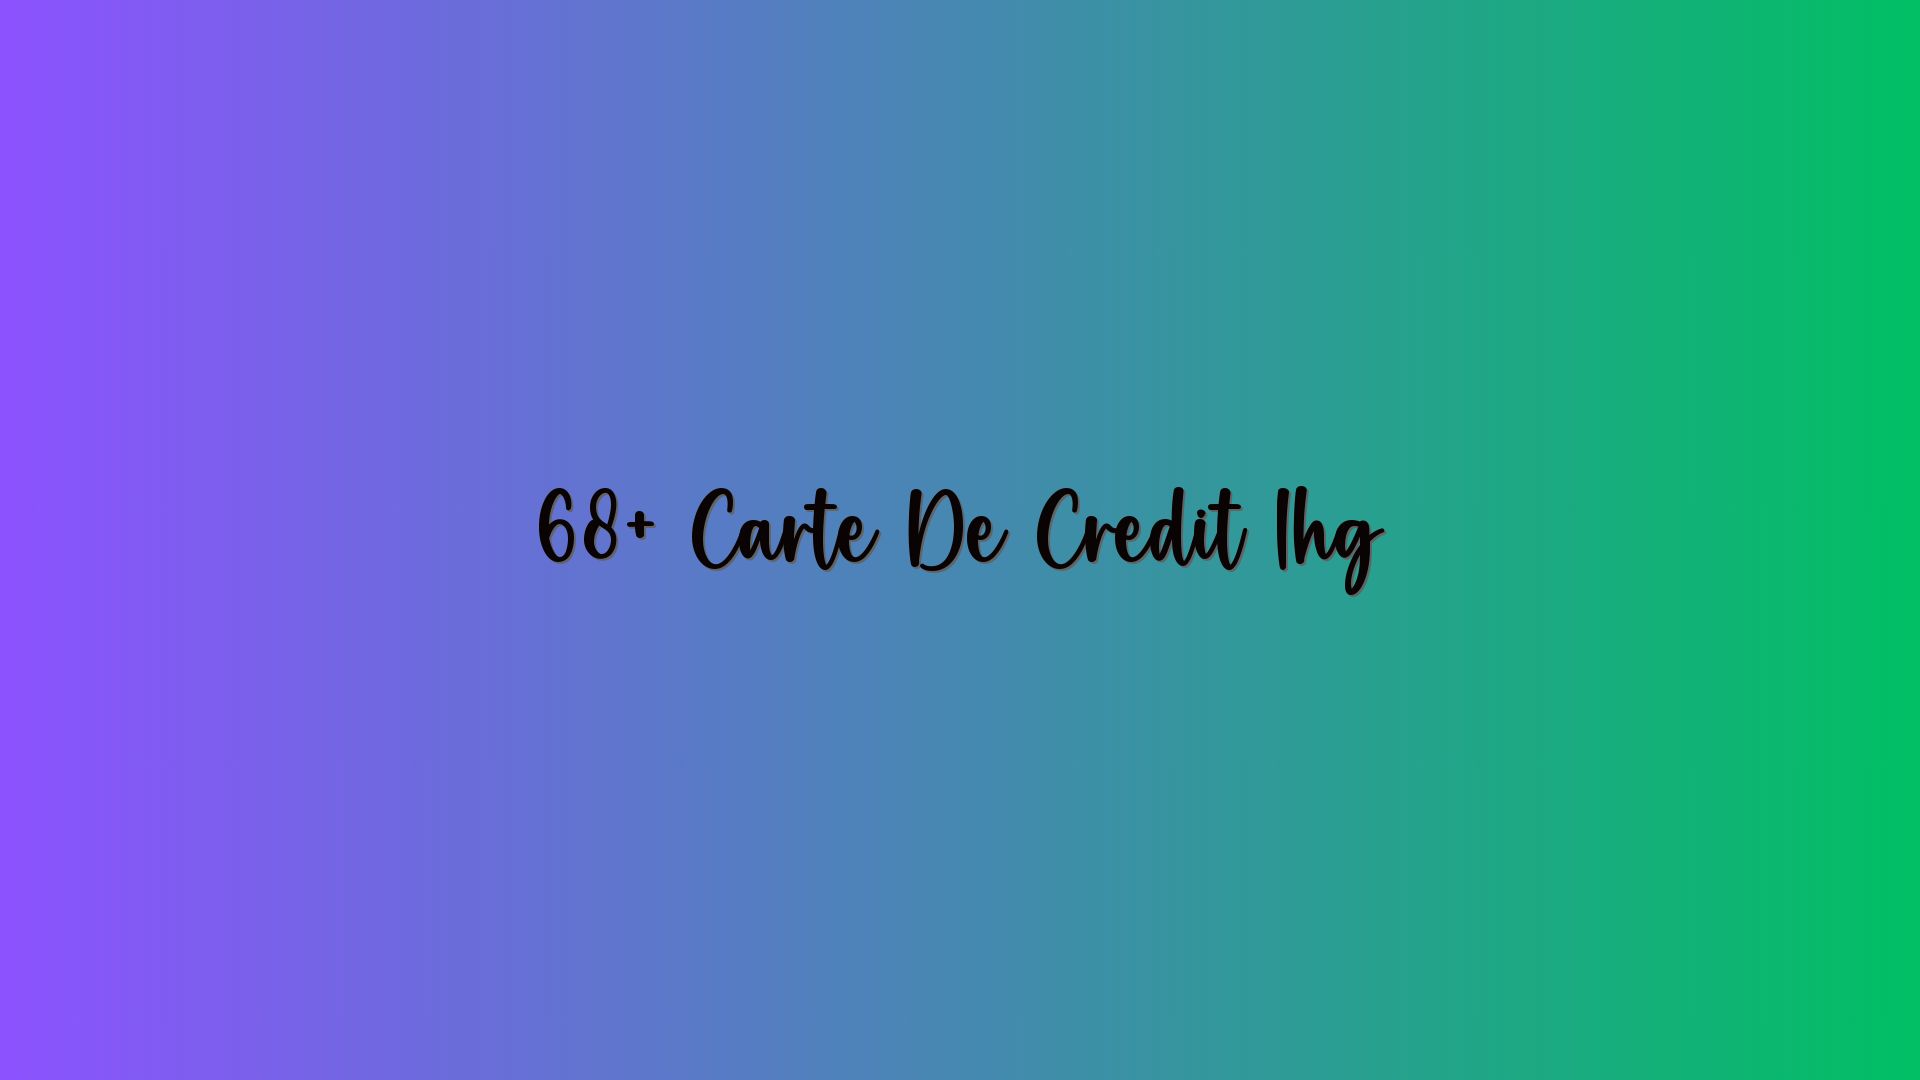 68+ Carte De Credit Ihg